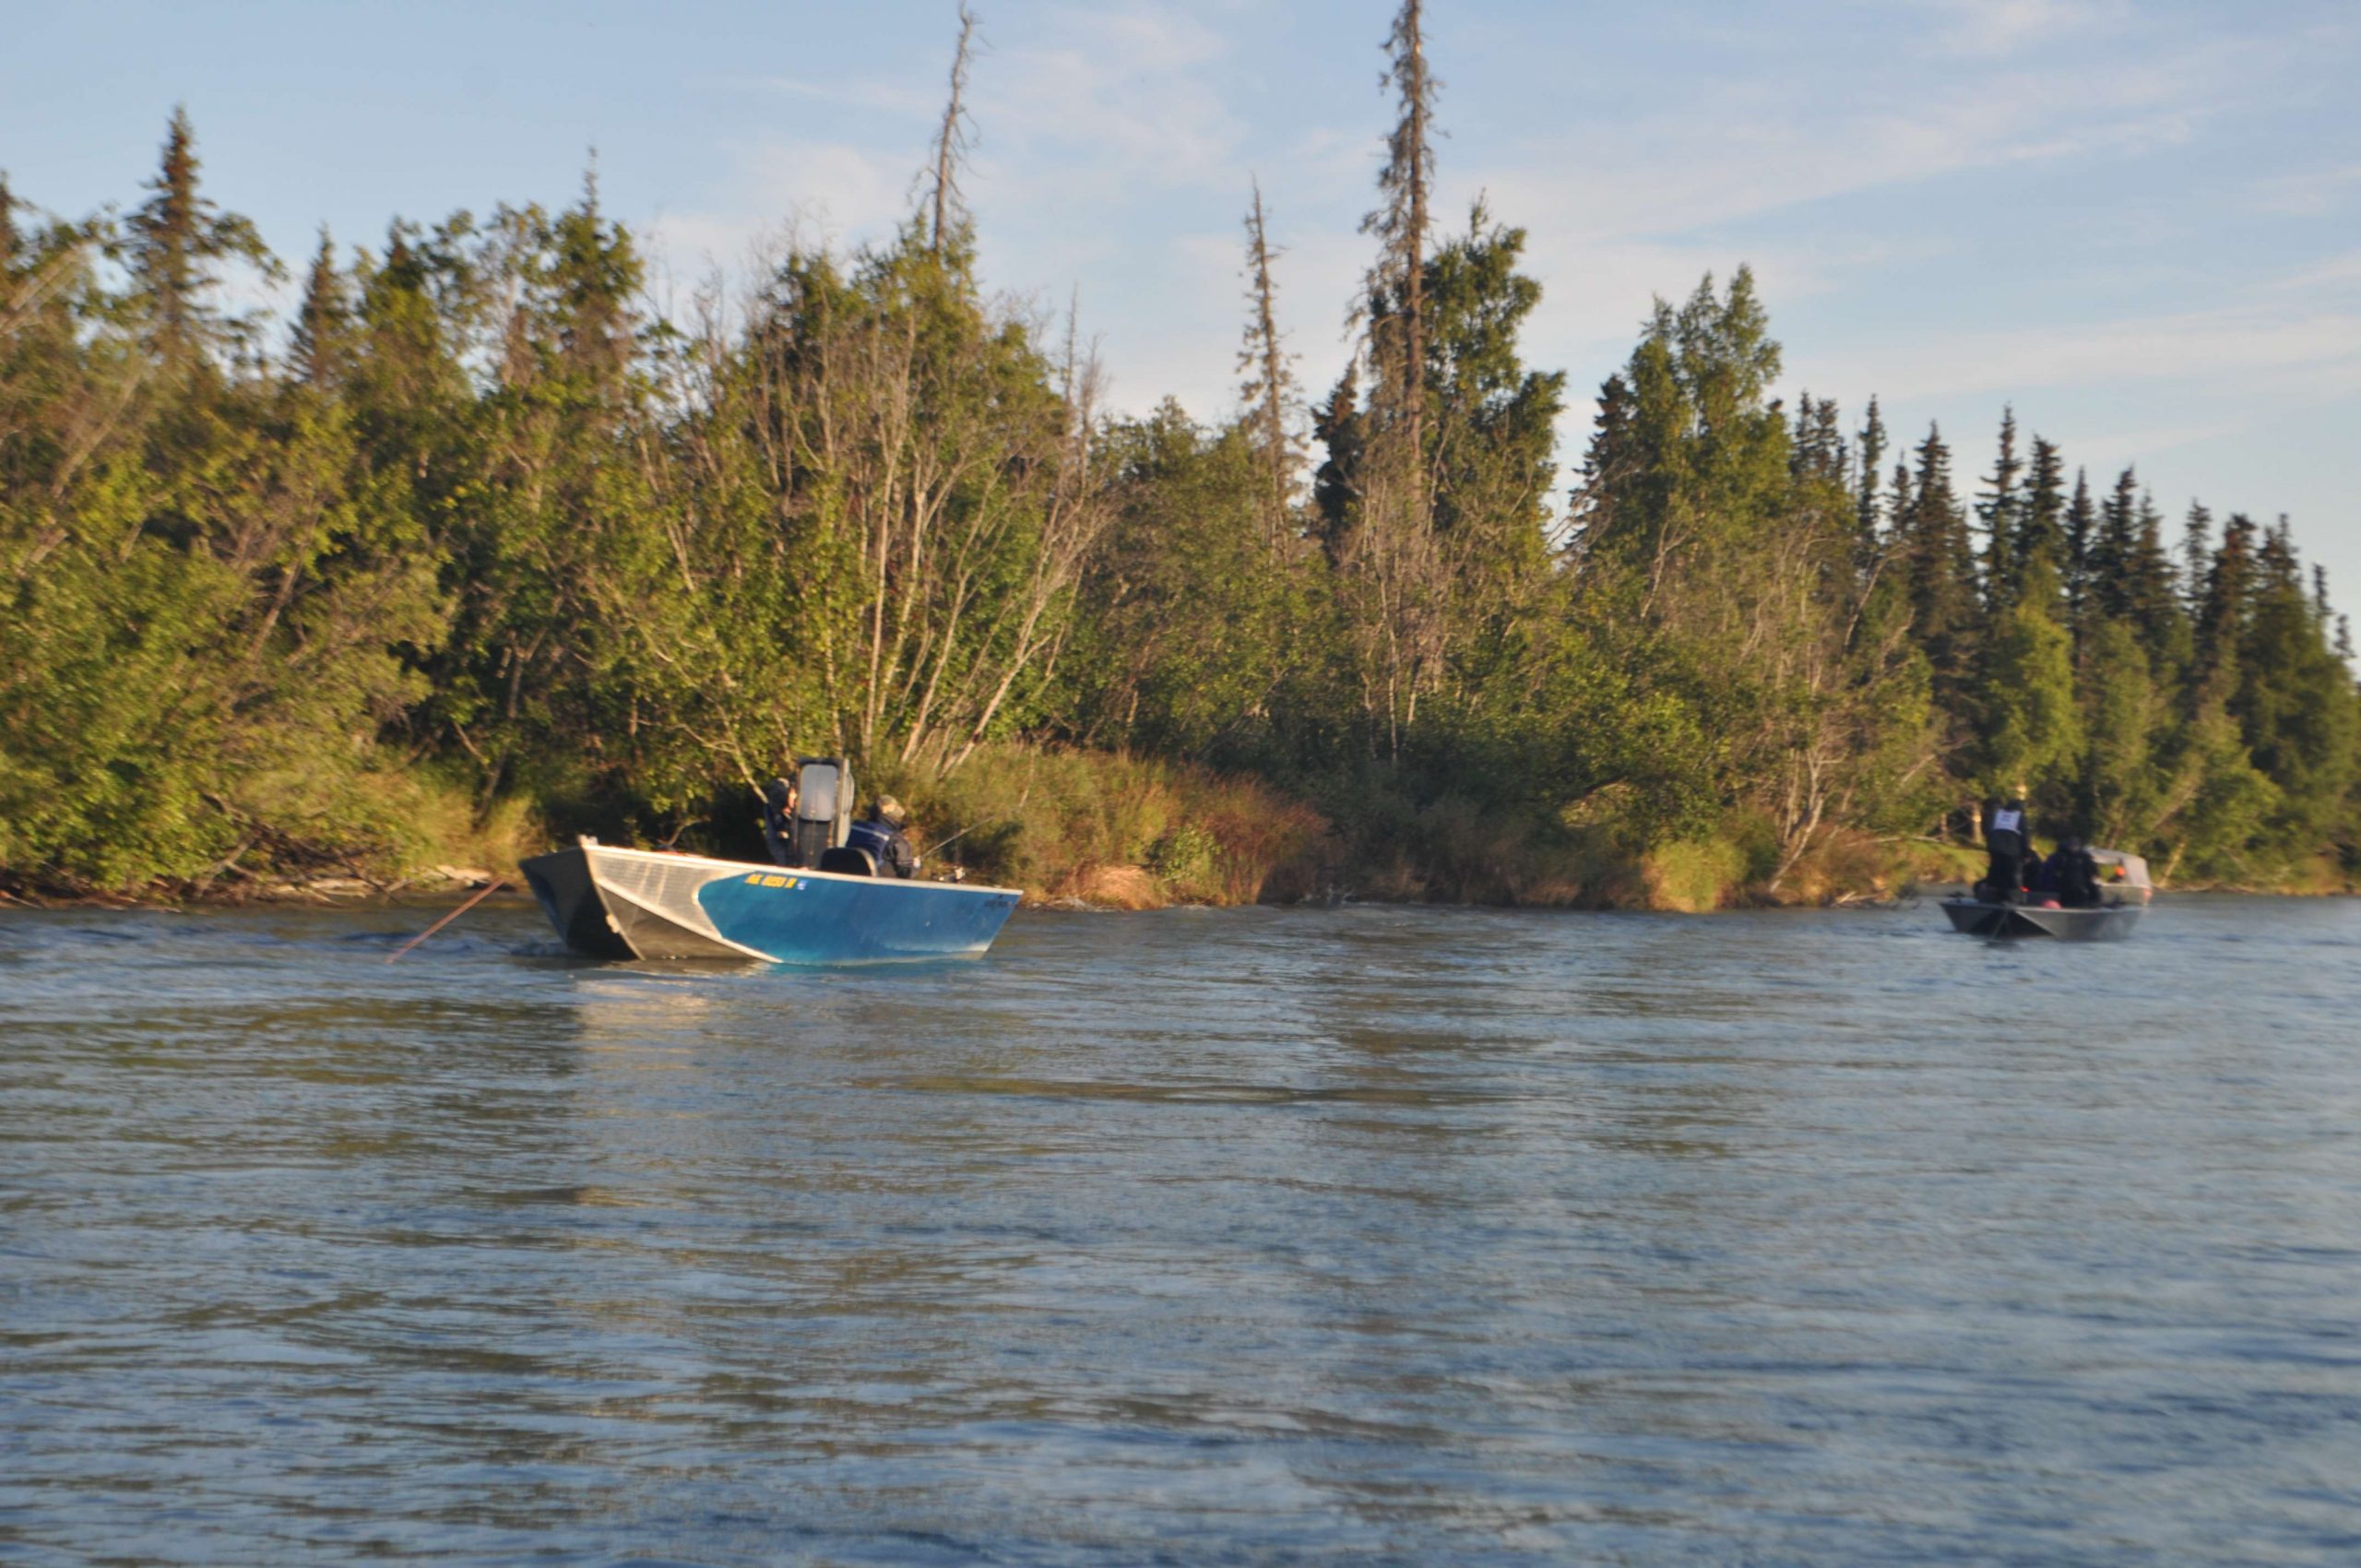 Anglers line up to fish Alaskaâs famed Kenai River during the silver salmon run.